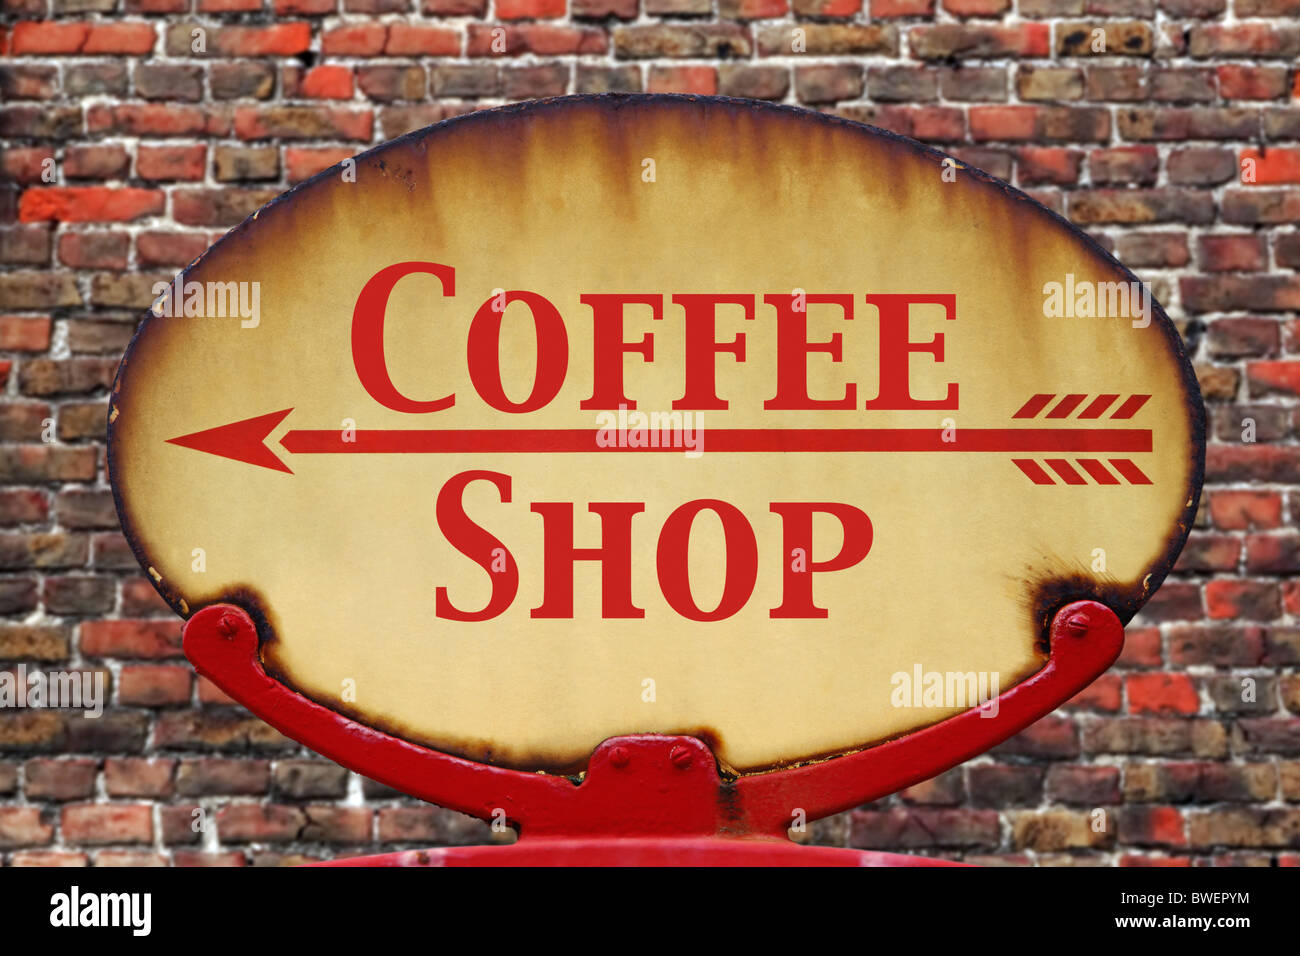 Un vieux rétro rouillé arrow sign avec le texte Coffee shop Banque D'Images